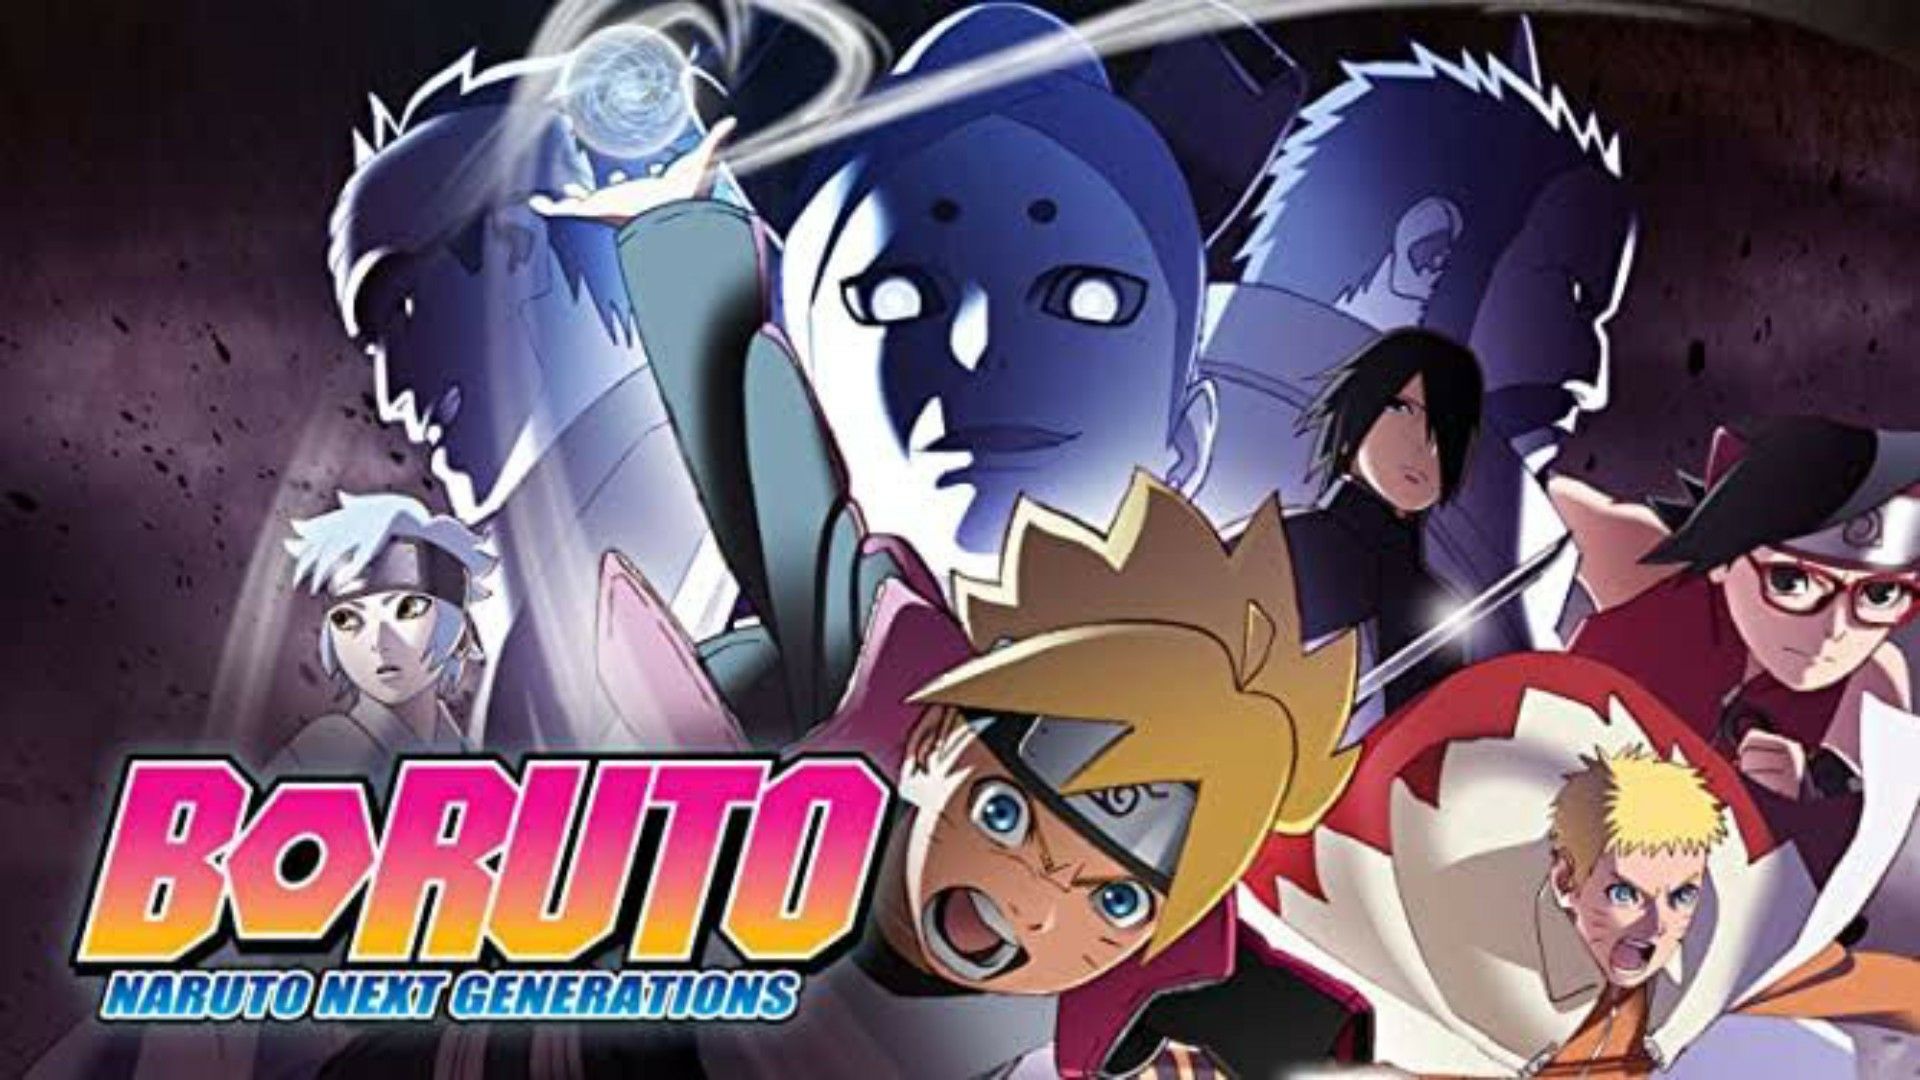 Assistir Boruto: Naruto Next Generations Episodio 53 Online